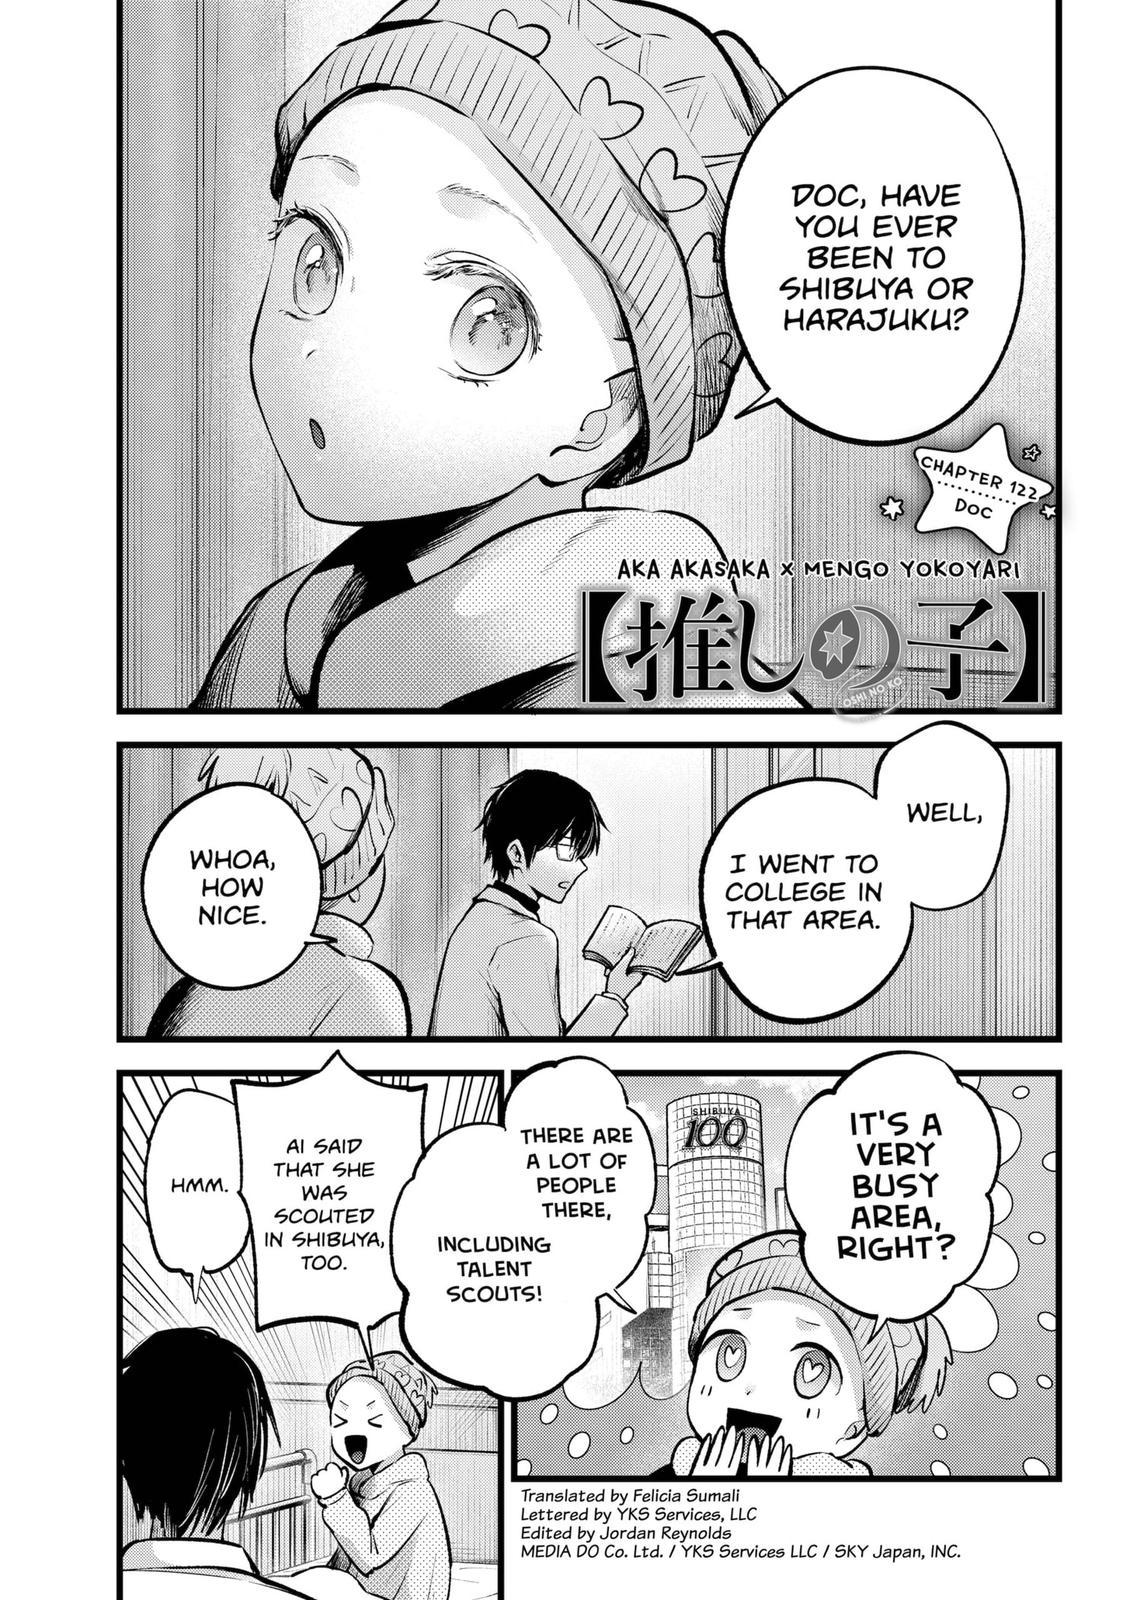 Oshi no ko, Chapter 128 - Oshi no ko Manga Online